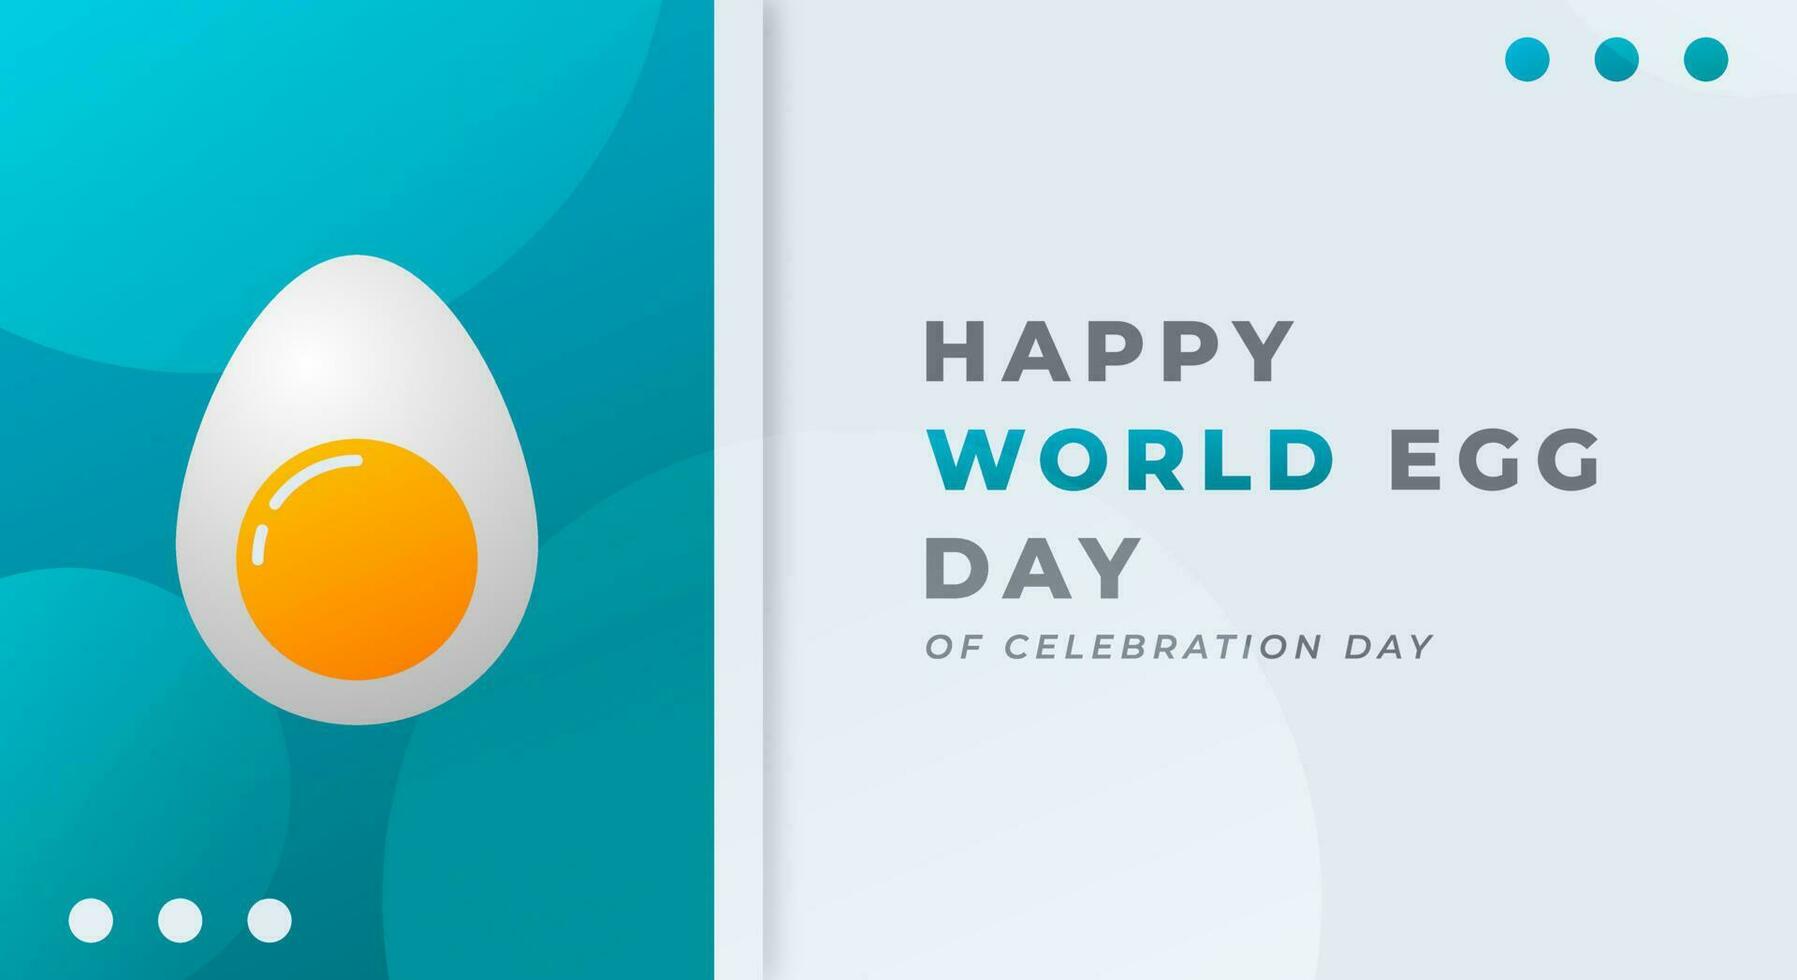 mondo uovo giorno celebrazione vettore design illustrazione per sfondo, manifesto, striscione, pubblicità, saluto carta